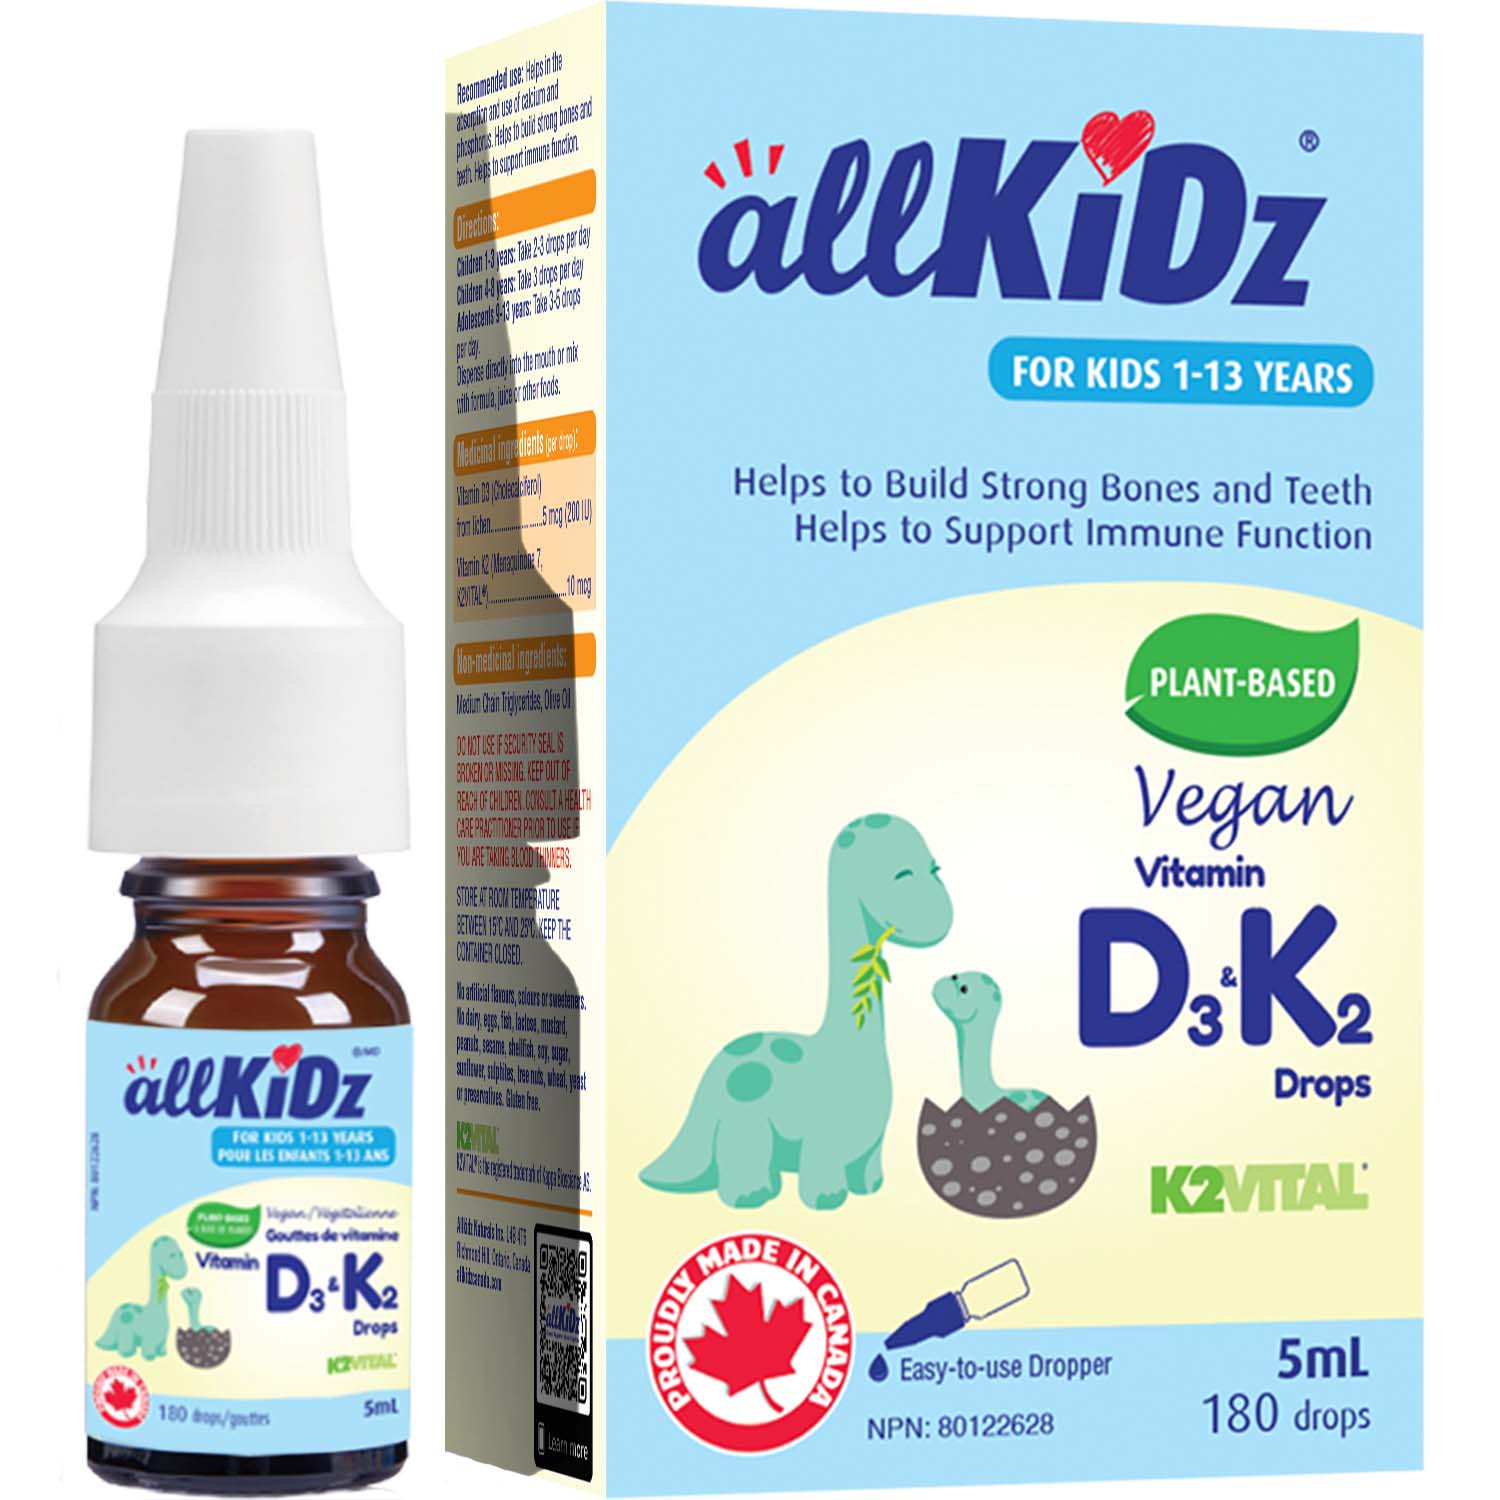 AllKidz Vegan Vitamin D3 & K2 Drops 5ml (180 Drops)